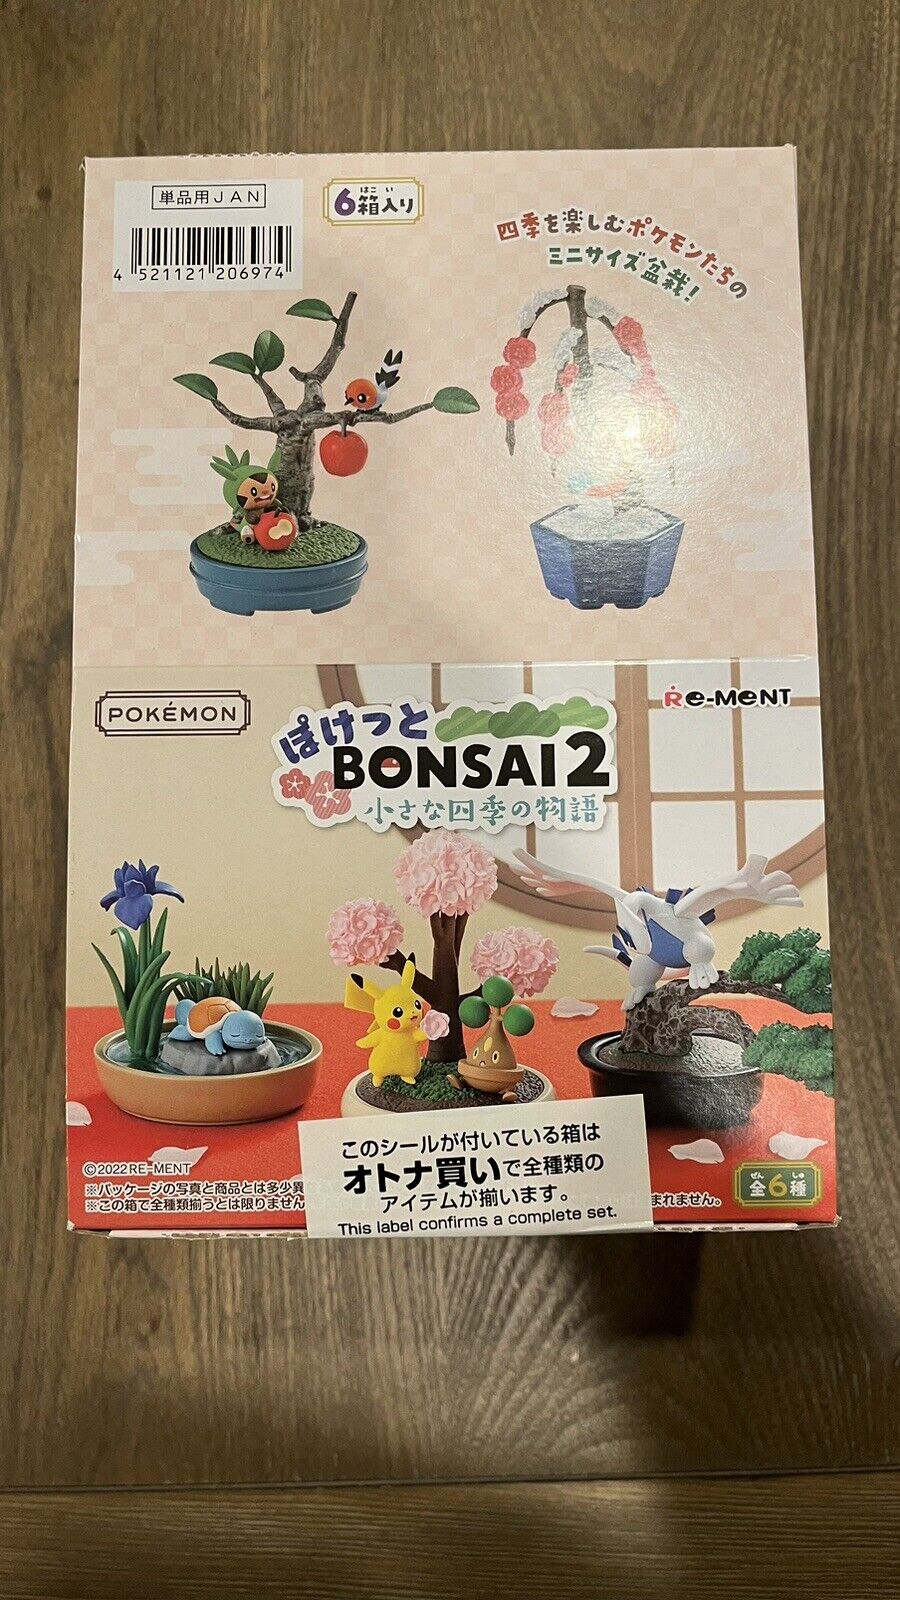 NEW Re-Ment Pokemon Pocket Bonsai Series 2, One Full Complete Set OF 6 US SELLER